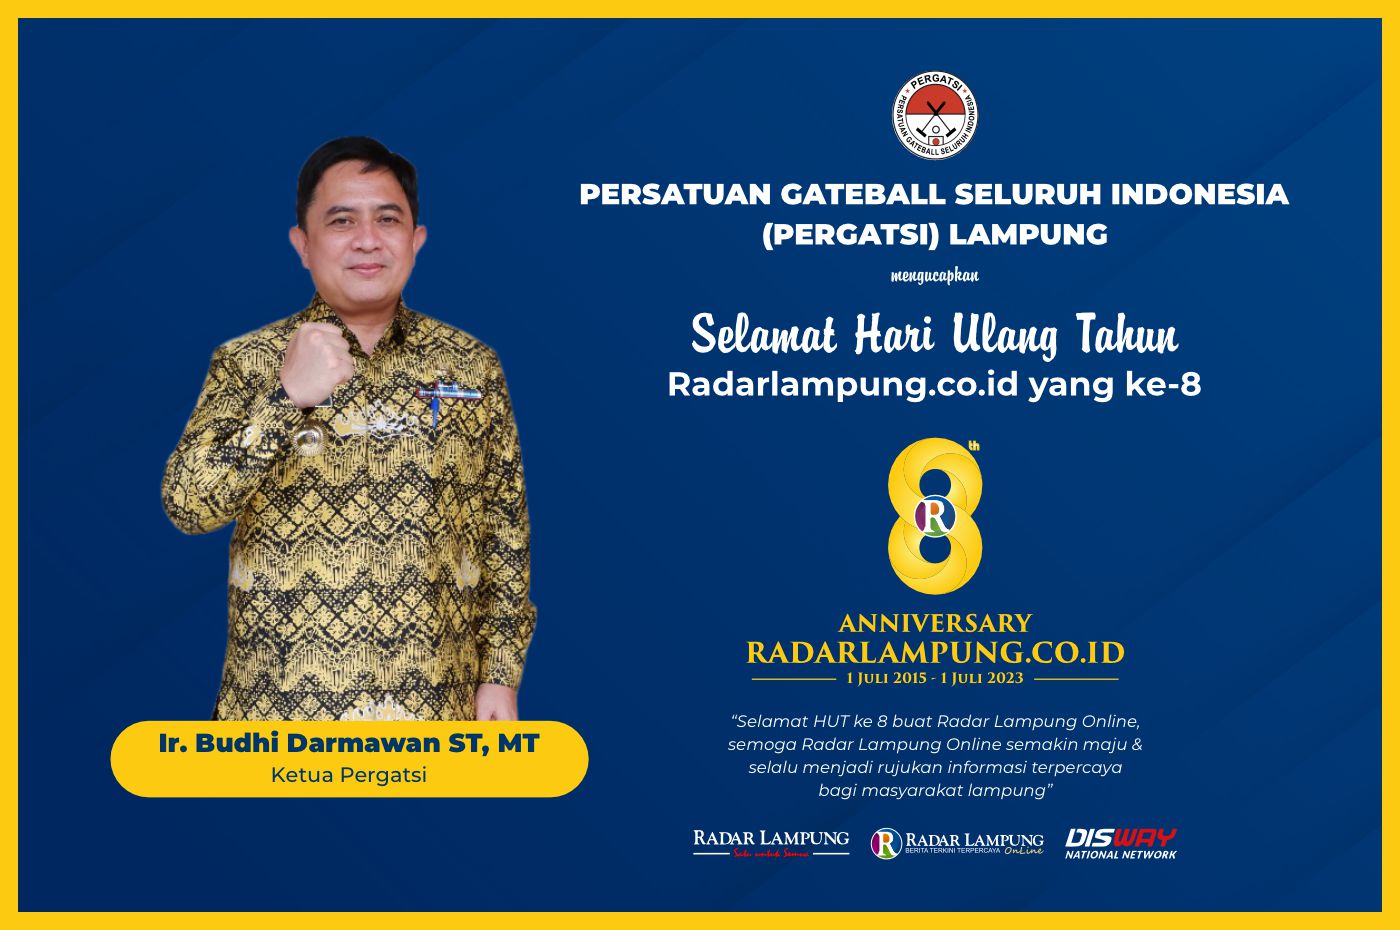 Persatuan Gateball Seluruh Indonesia (Pergatsi) Lampung: Selamat HUT ke-8 Radar Lampung Online